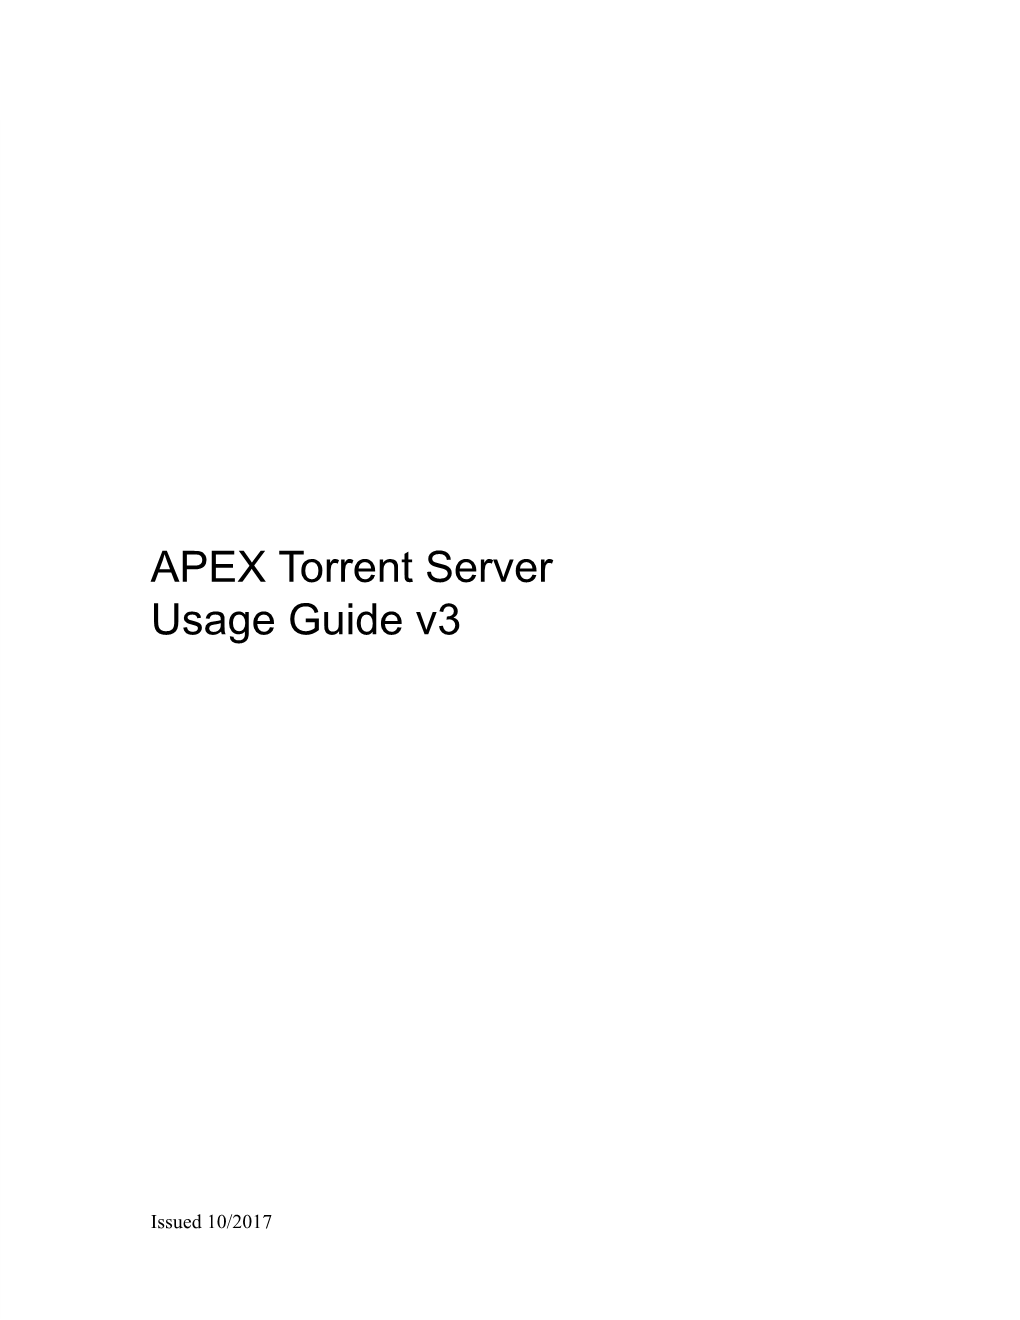 APEX Torrent Server Usage Guide V3